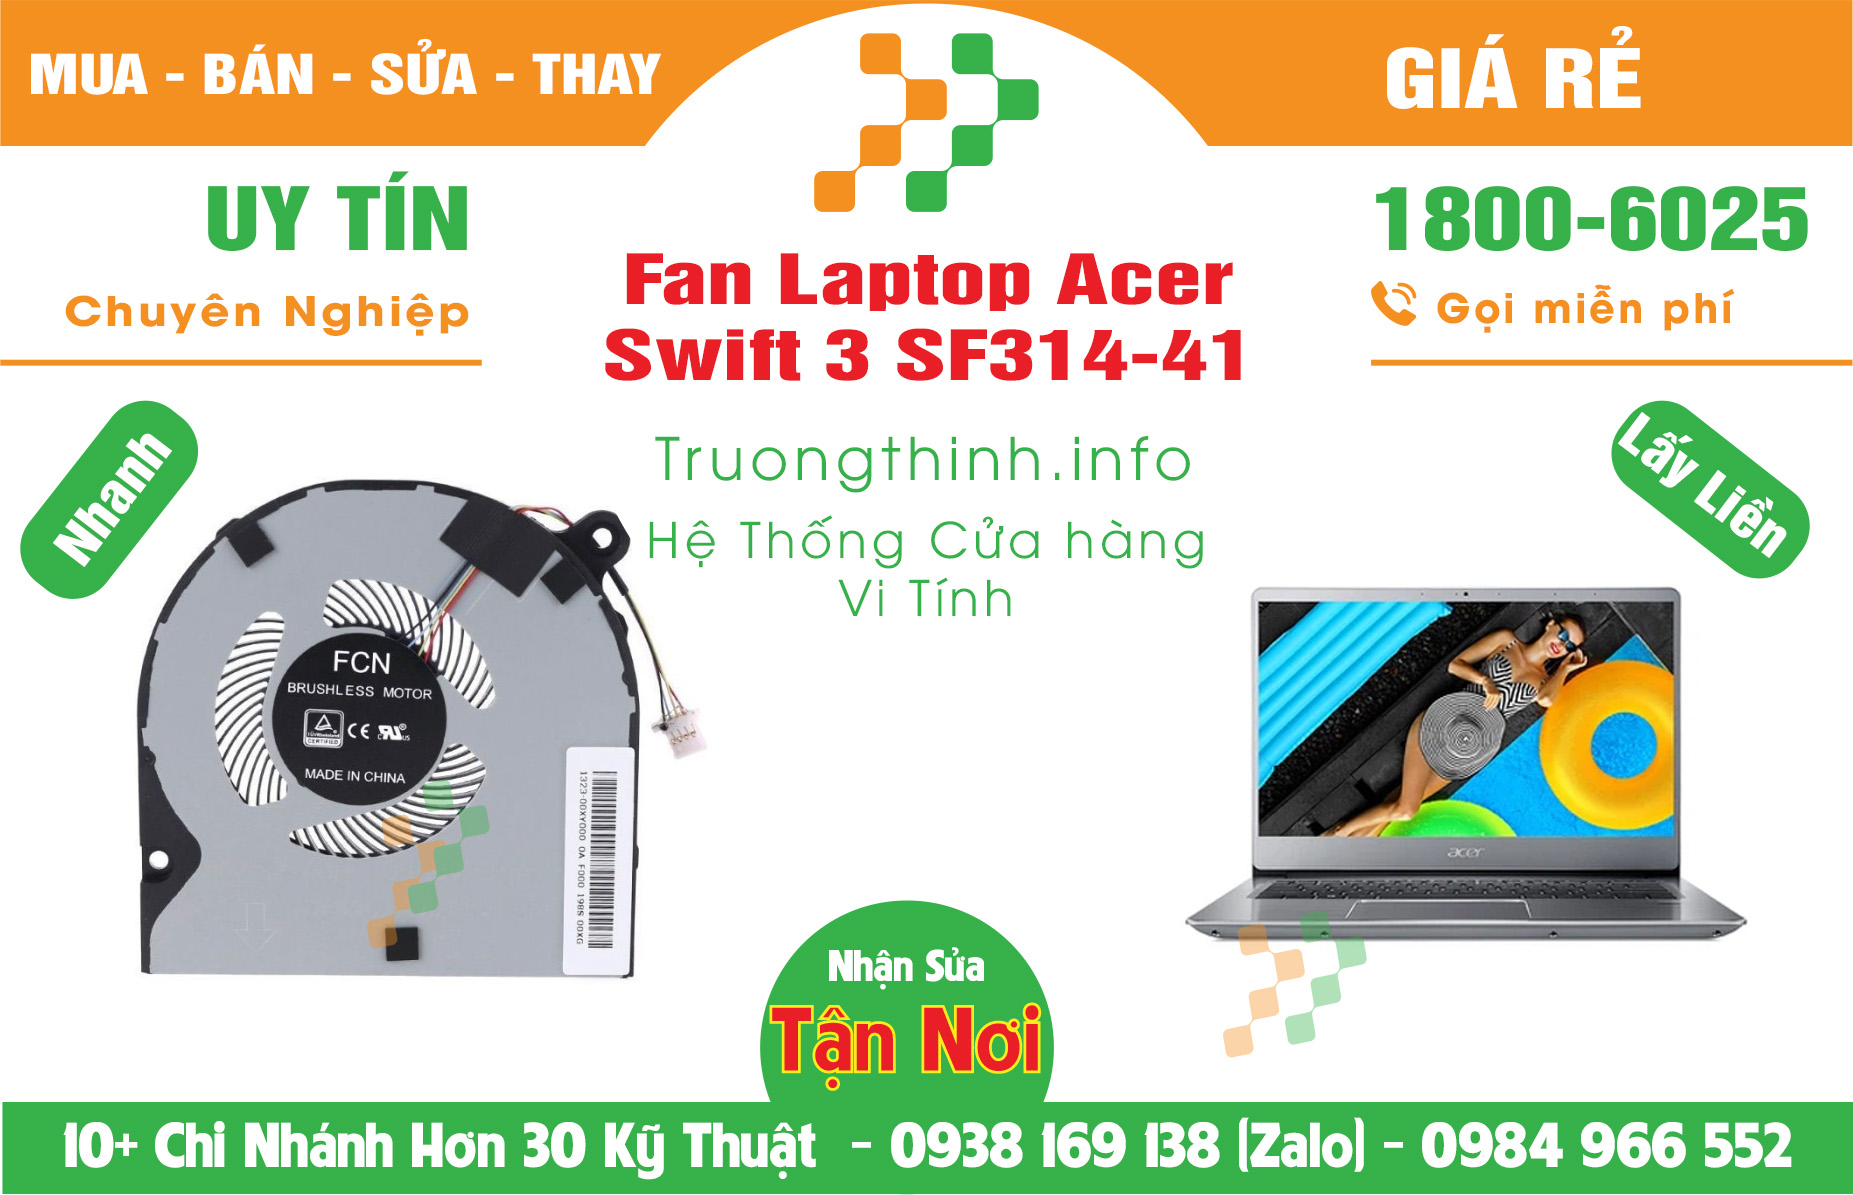 Mua Bán Vỏ Laptop Acer Swift 3 SF314-41 Giá Rẻ | Máy Tính Trường Thịnh Giá Rẻ